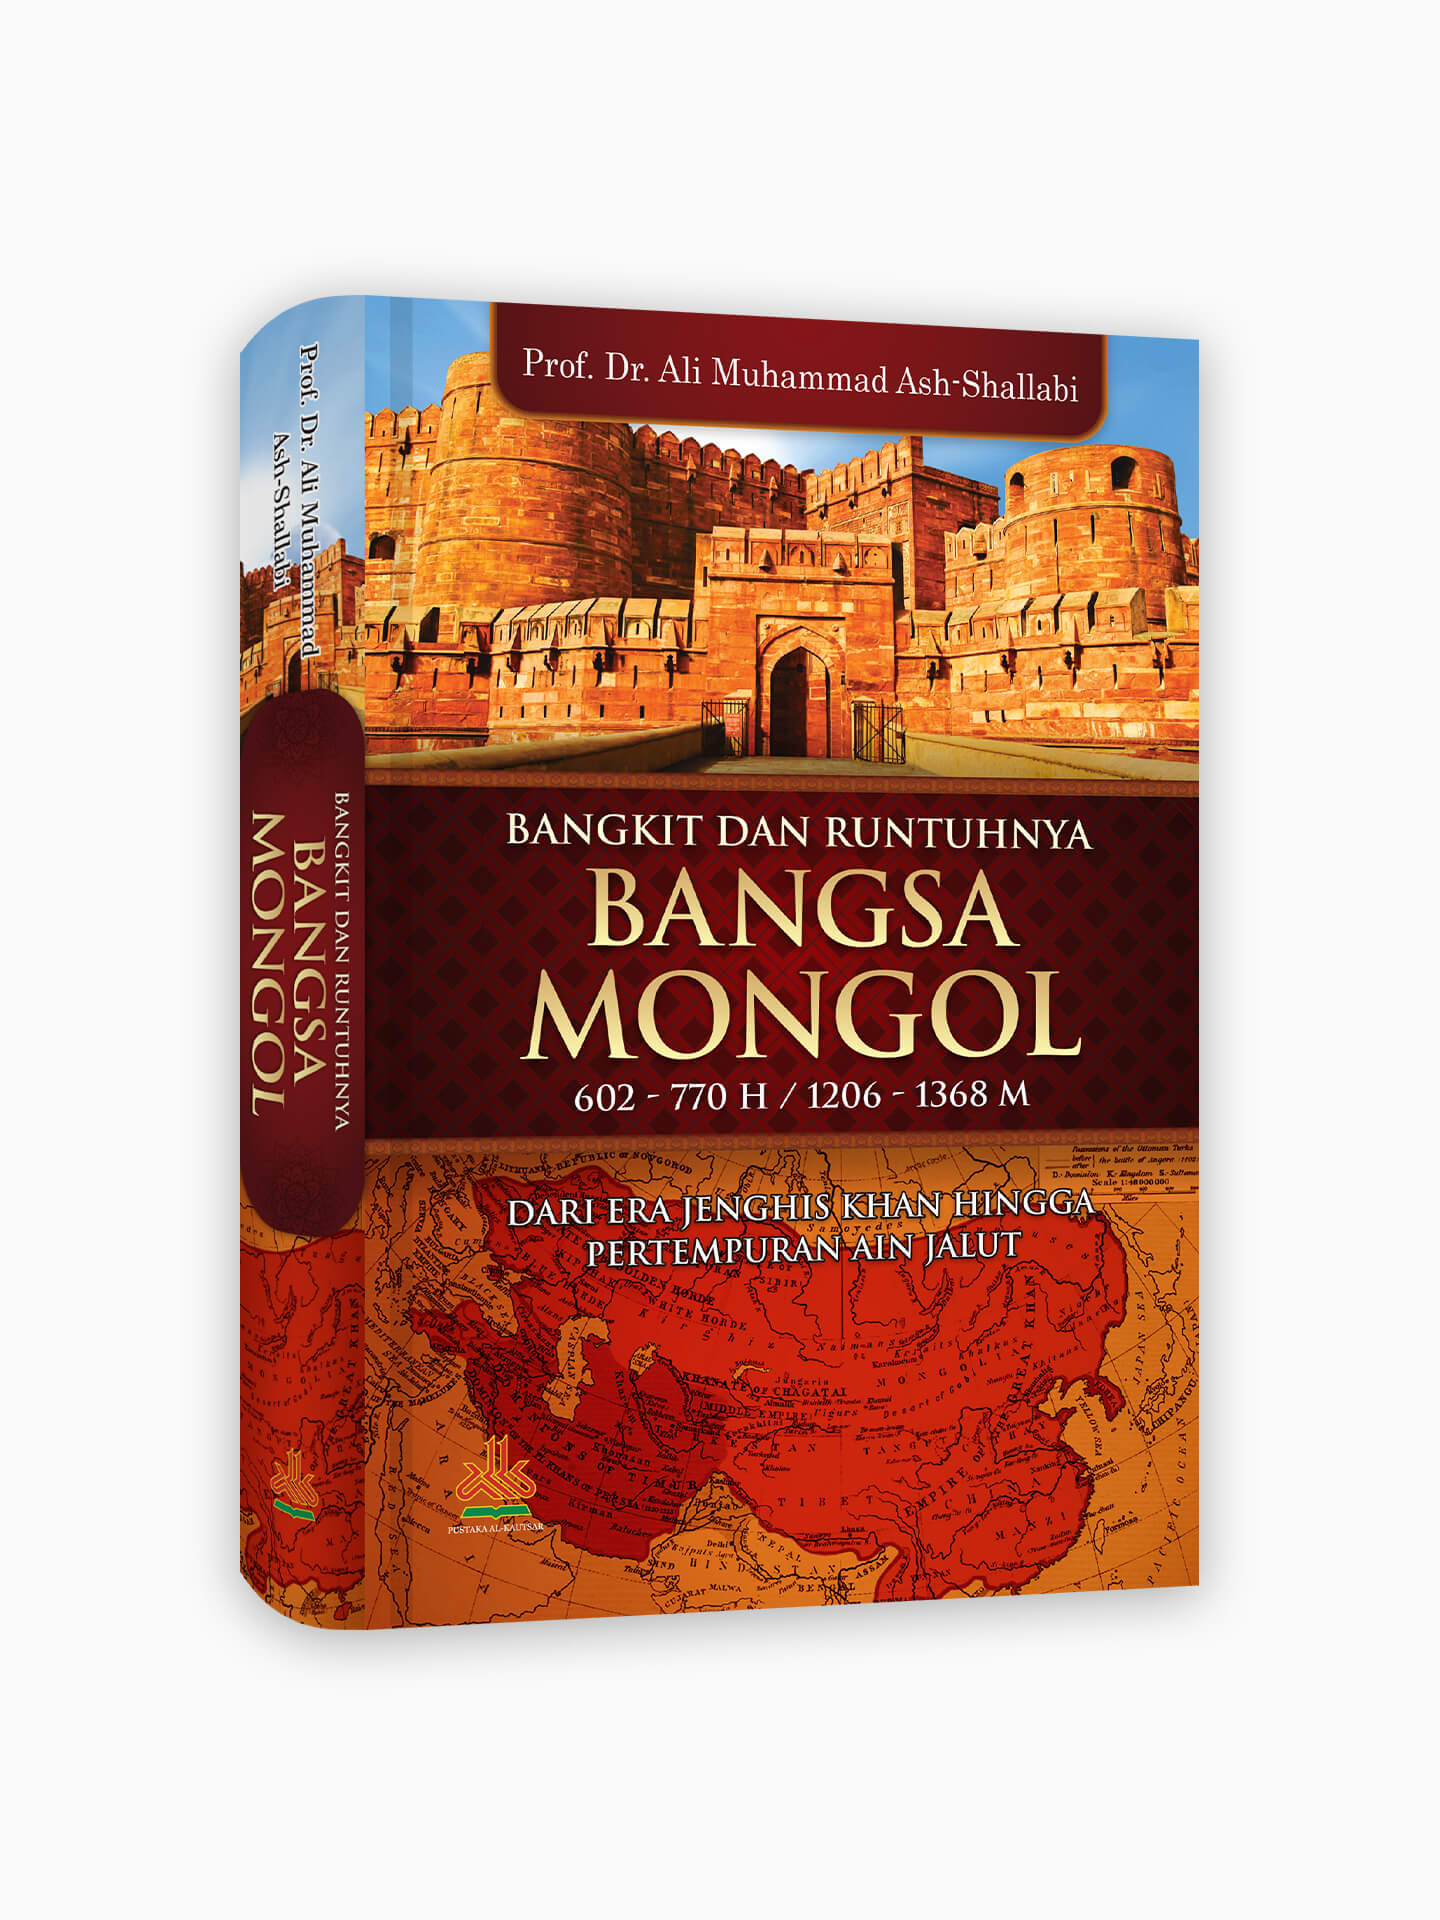 Bangkit dan Runtuhnya Bangsa Mongol